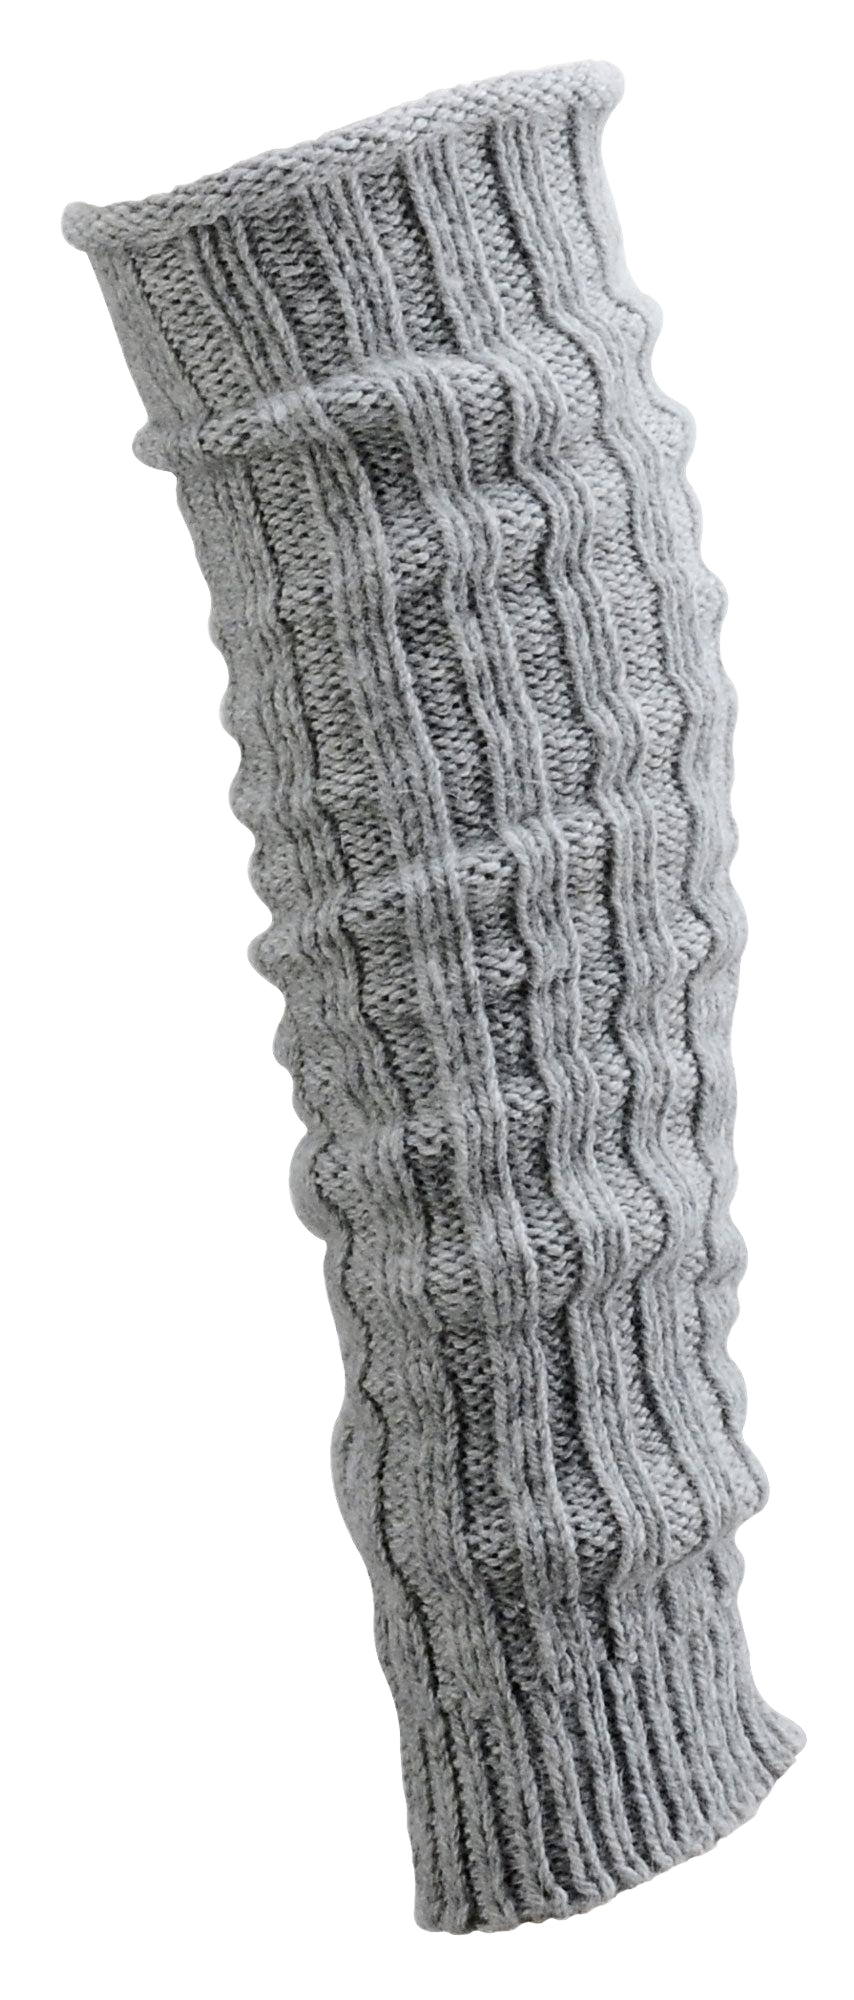 Grobstrick Stulpen Alpakawolle Legwamer Beinwärmer Wadenwärmer hier in der Farbe grau abgebildet.